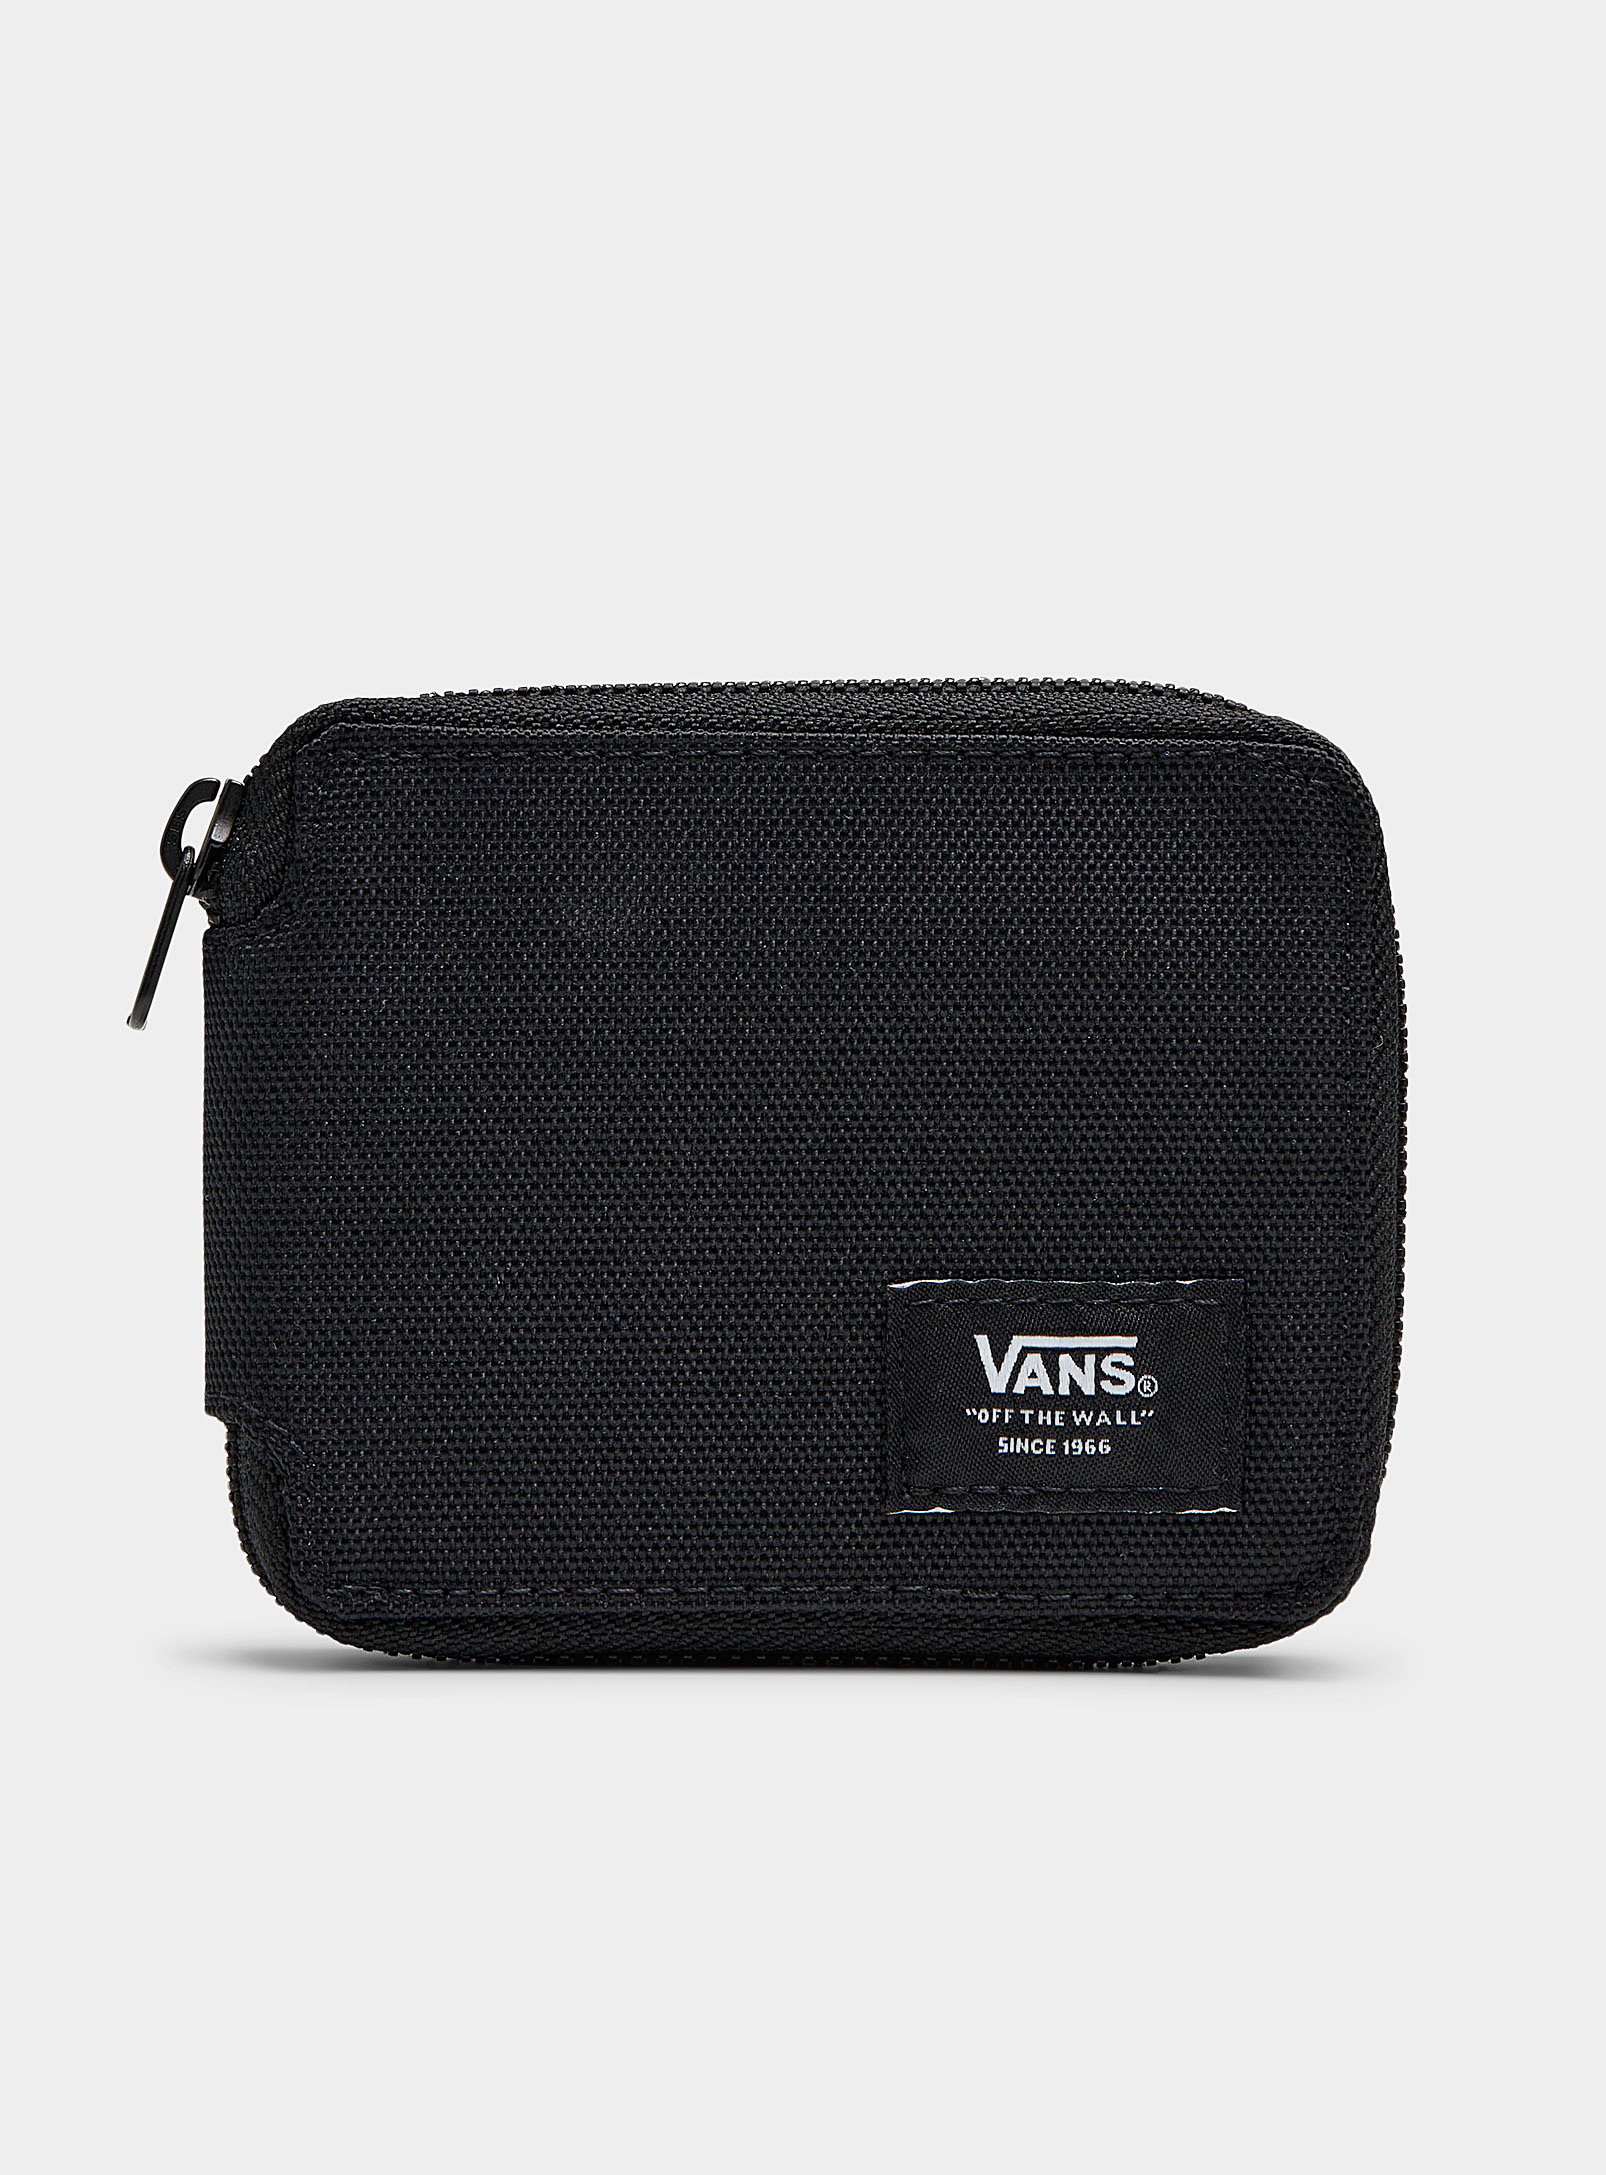 Vans Woven Zip Wallet In Black